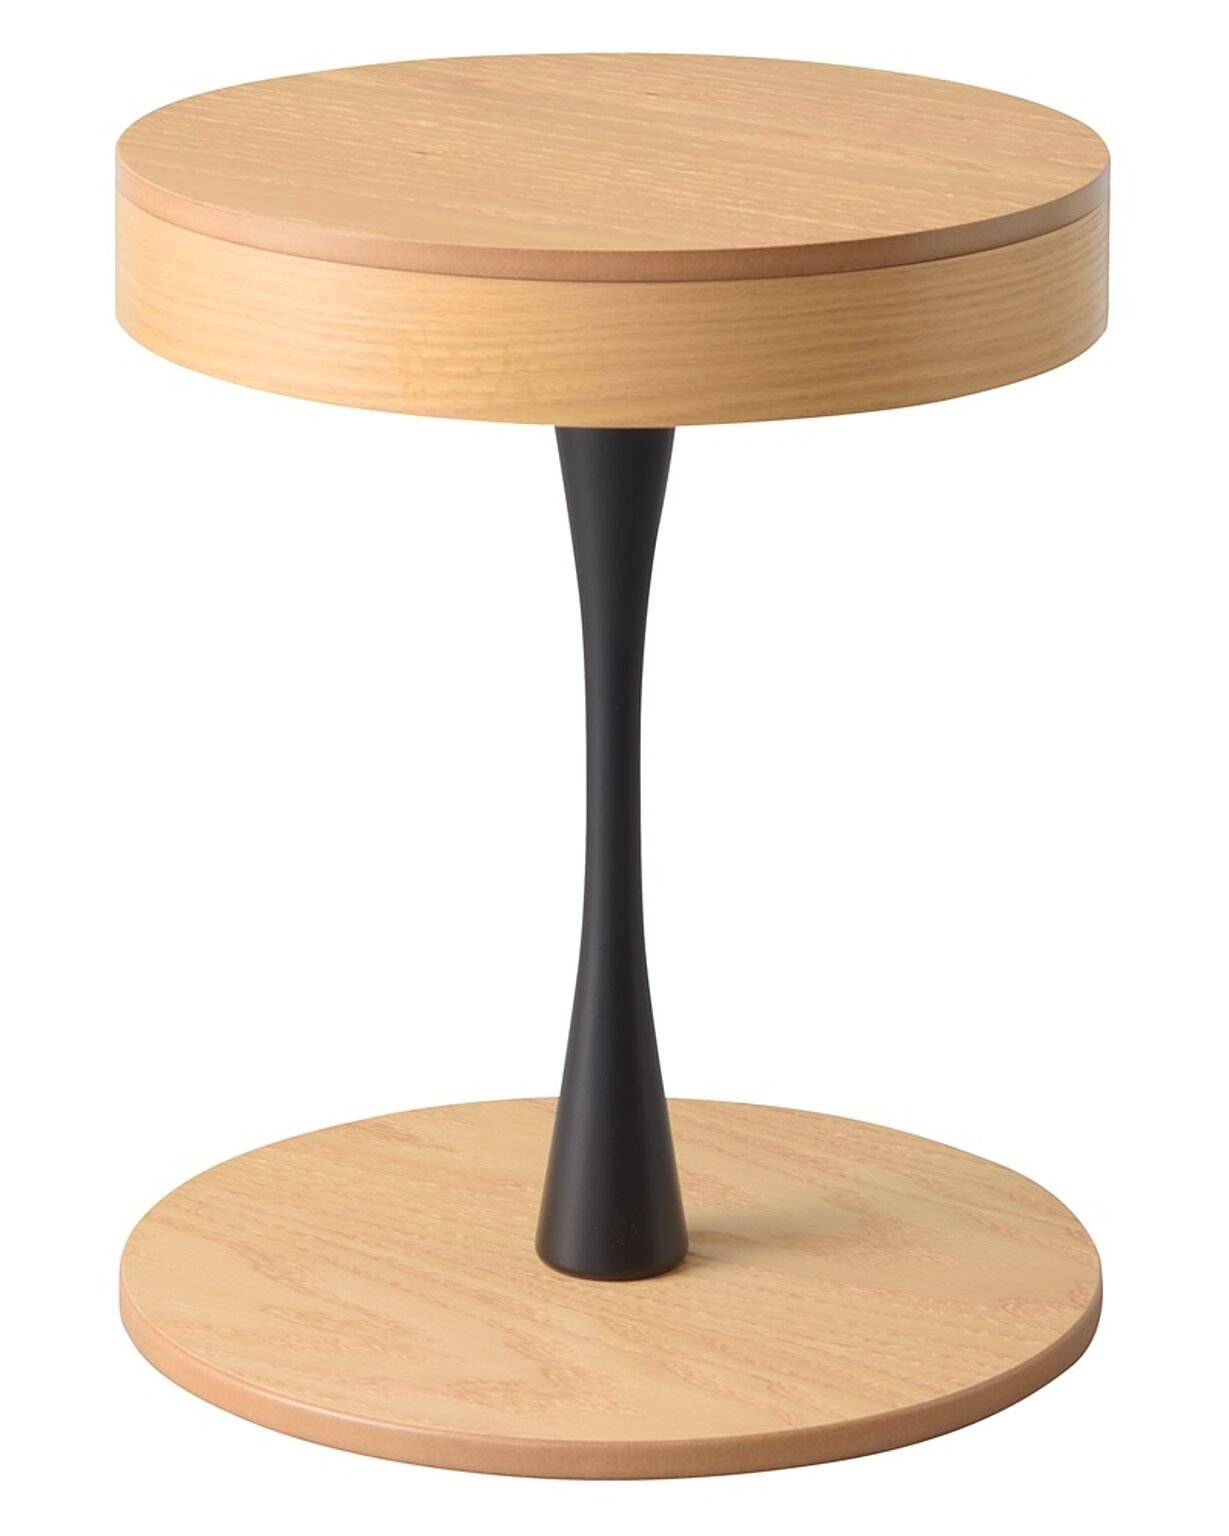 サイドテーブル W40×D40×H49 ナチュラル サイドテーブル 収納付 モダン シンプル かわいい おしゃれ 木目調 天然木 シャープ ヴィンテージ ナイトテーブル テーブル 幅40センチ